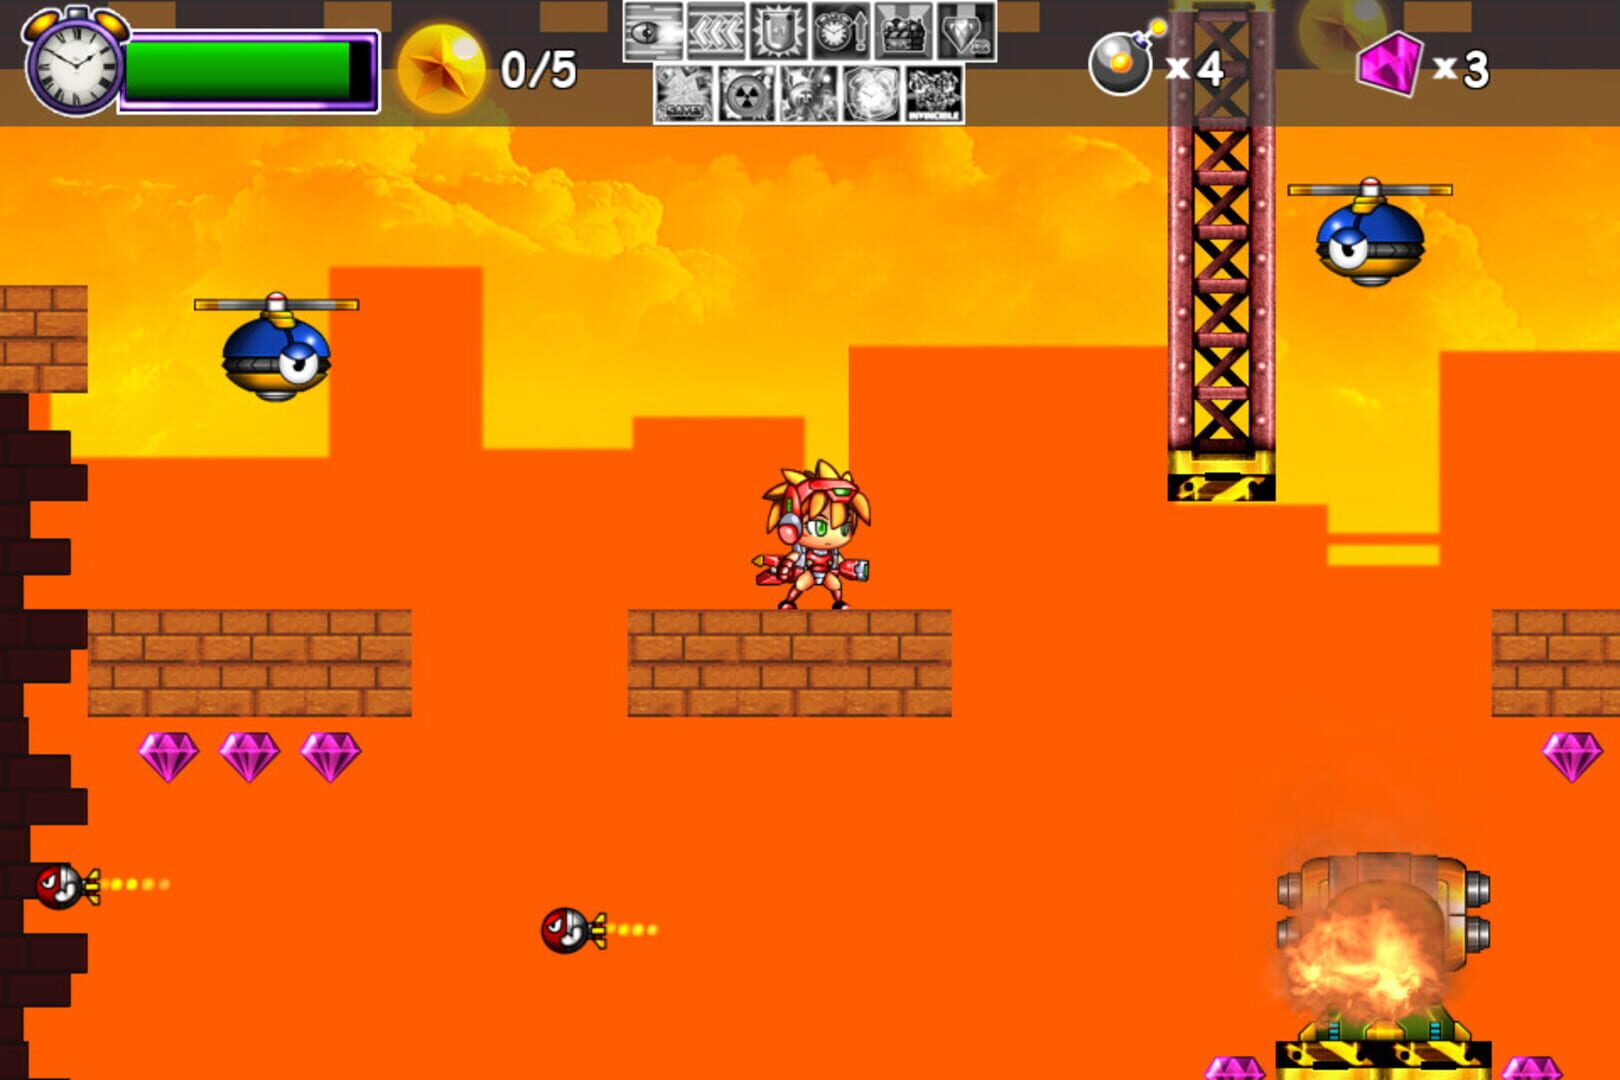 Dyna Bomb screenshot